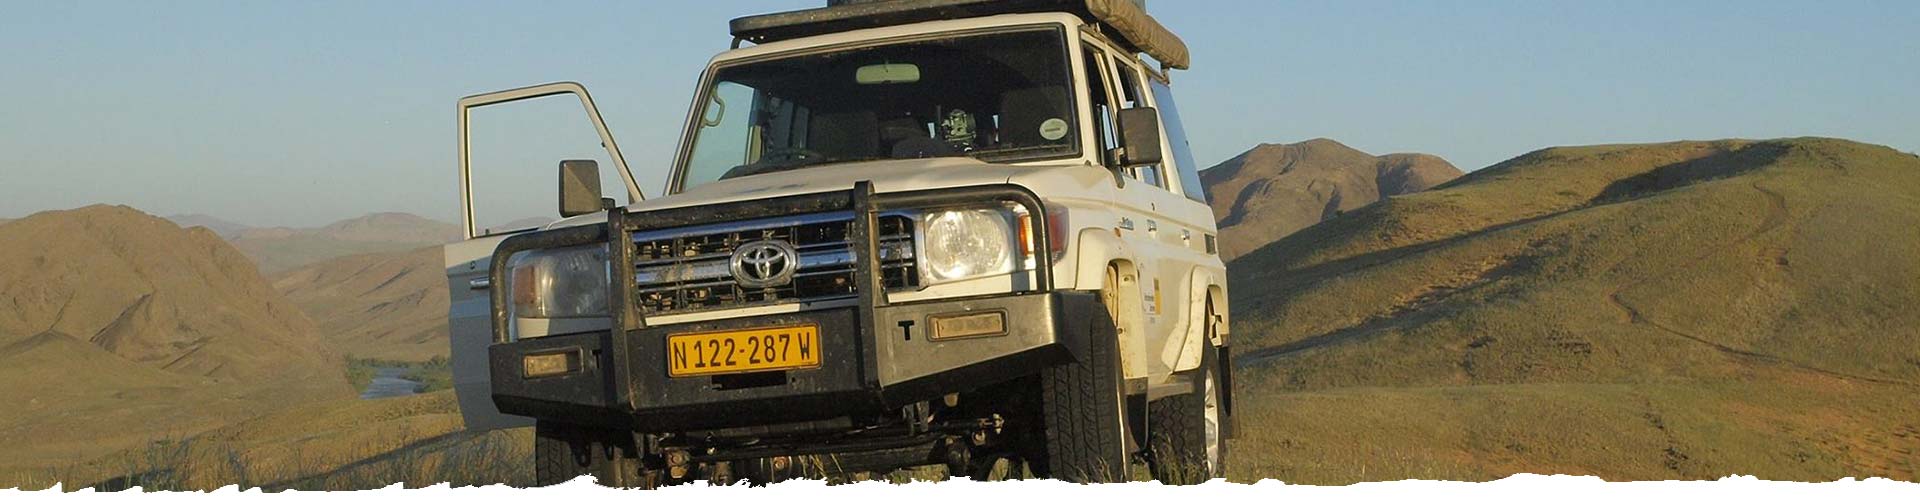 Autohuur-Namibie-Toyota-Landcruiser-4.2TD-4x4-4personen-slider_01